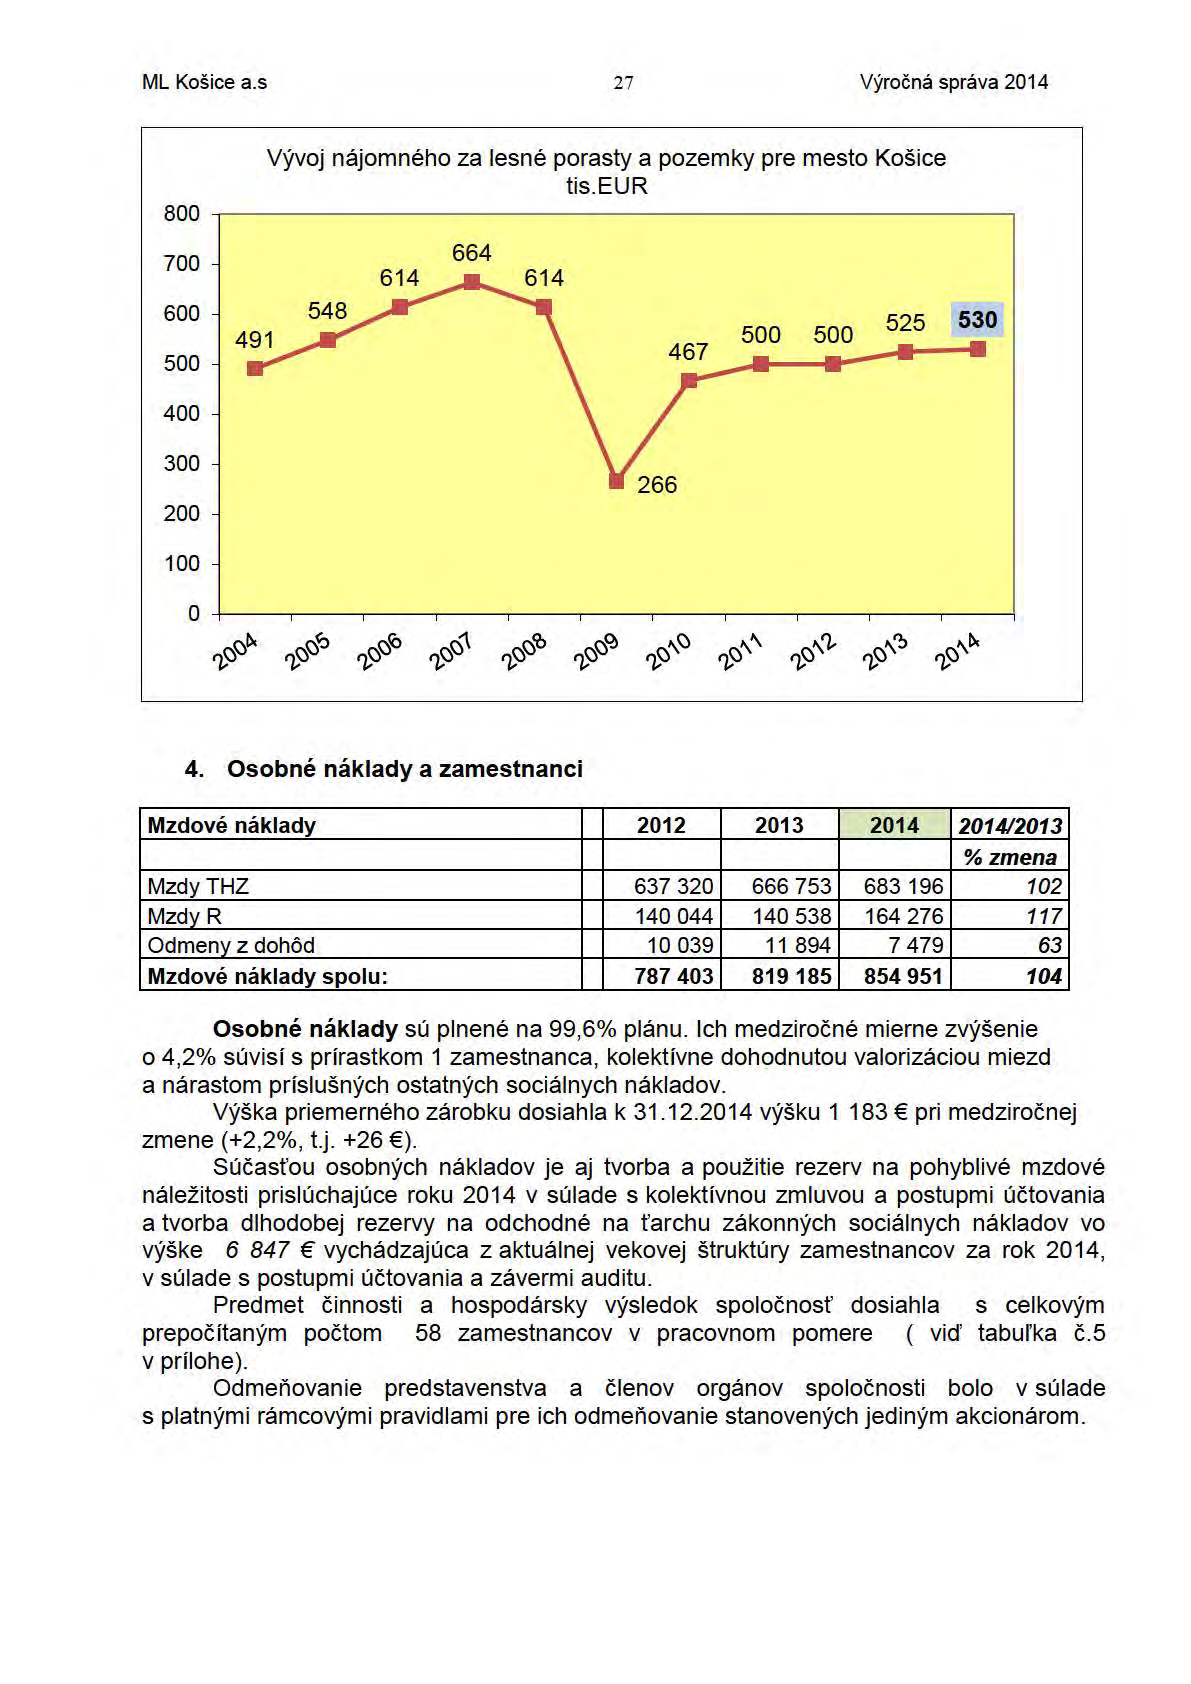 ML Košice a.s 27 Výročná správa 2014 800 700 Vývoj nájomného za lesné porasty a pozemky pre mesto Košice tis. EUR 664 600 500 400 300 200 100 o,."()()'>.,."()()<;,,."()()ro '1,()()1.,."()()co,."()()'?>,.